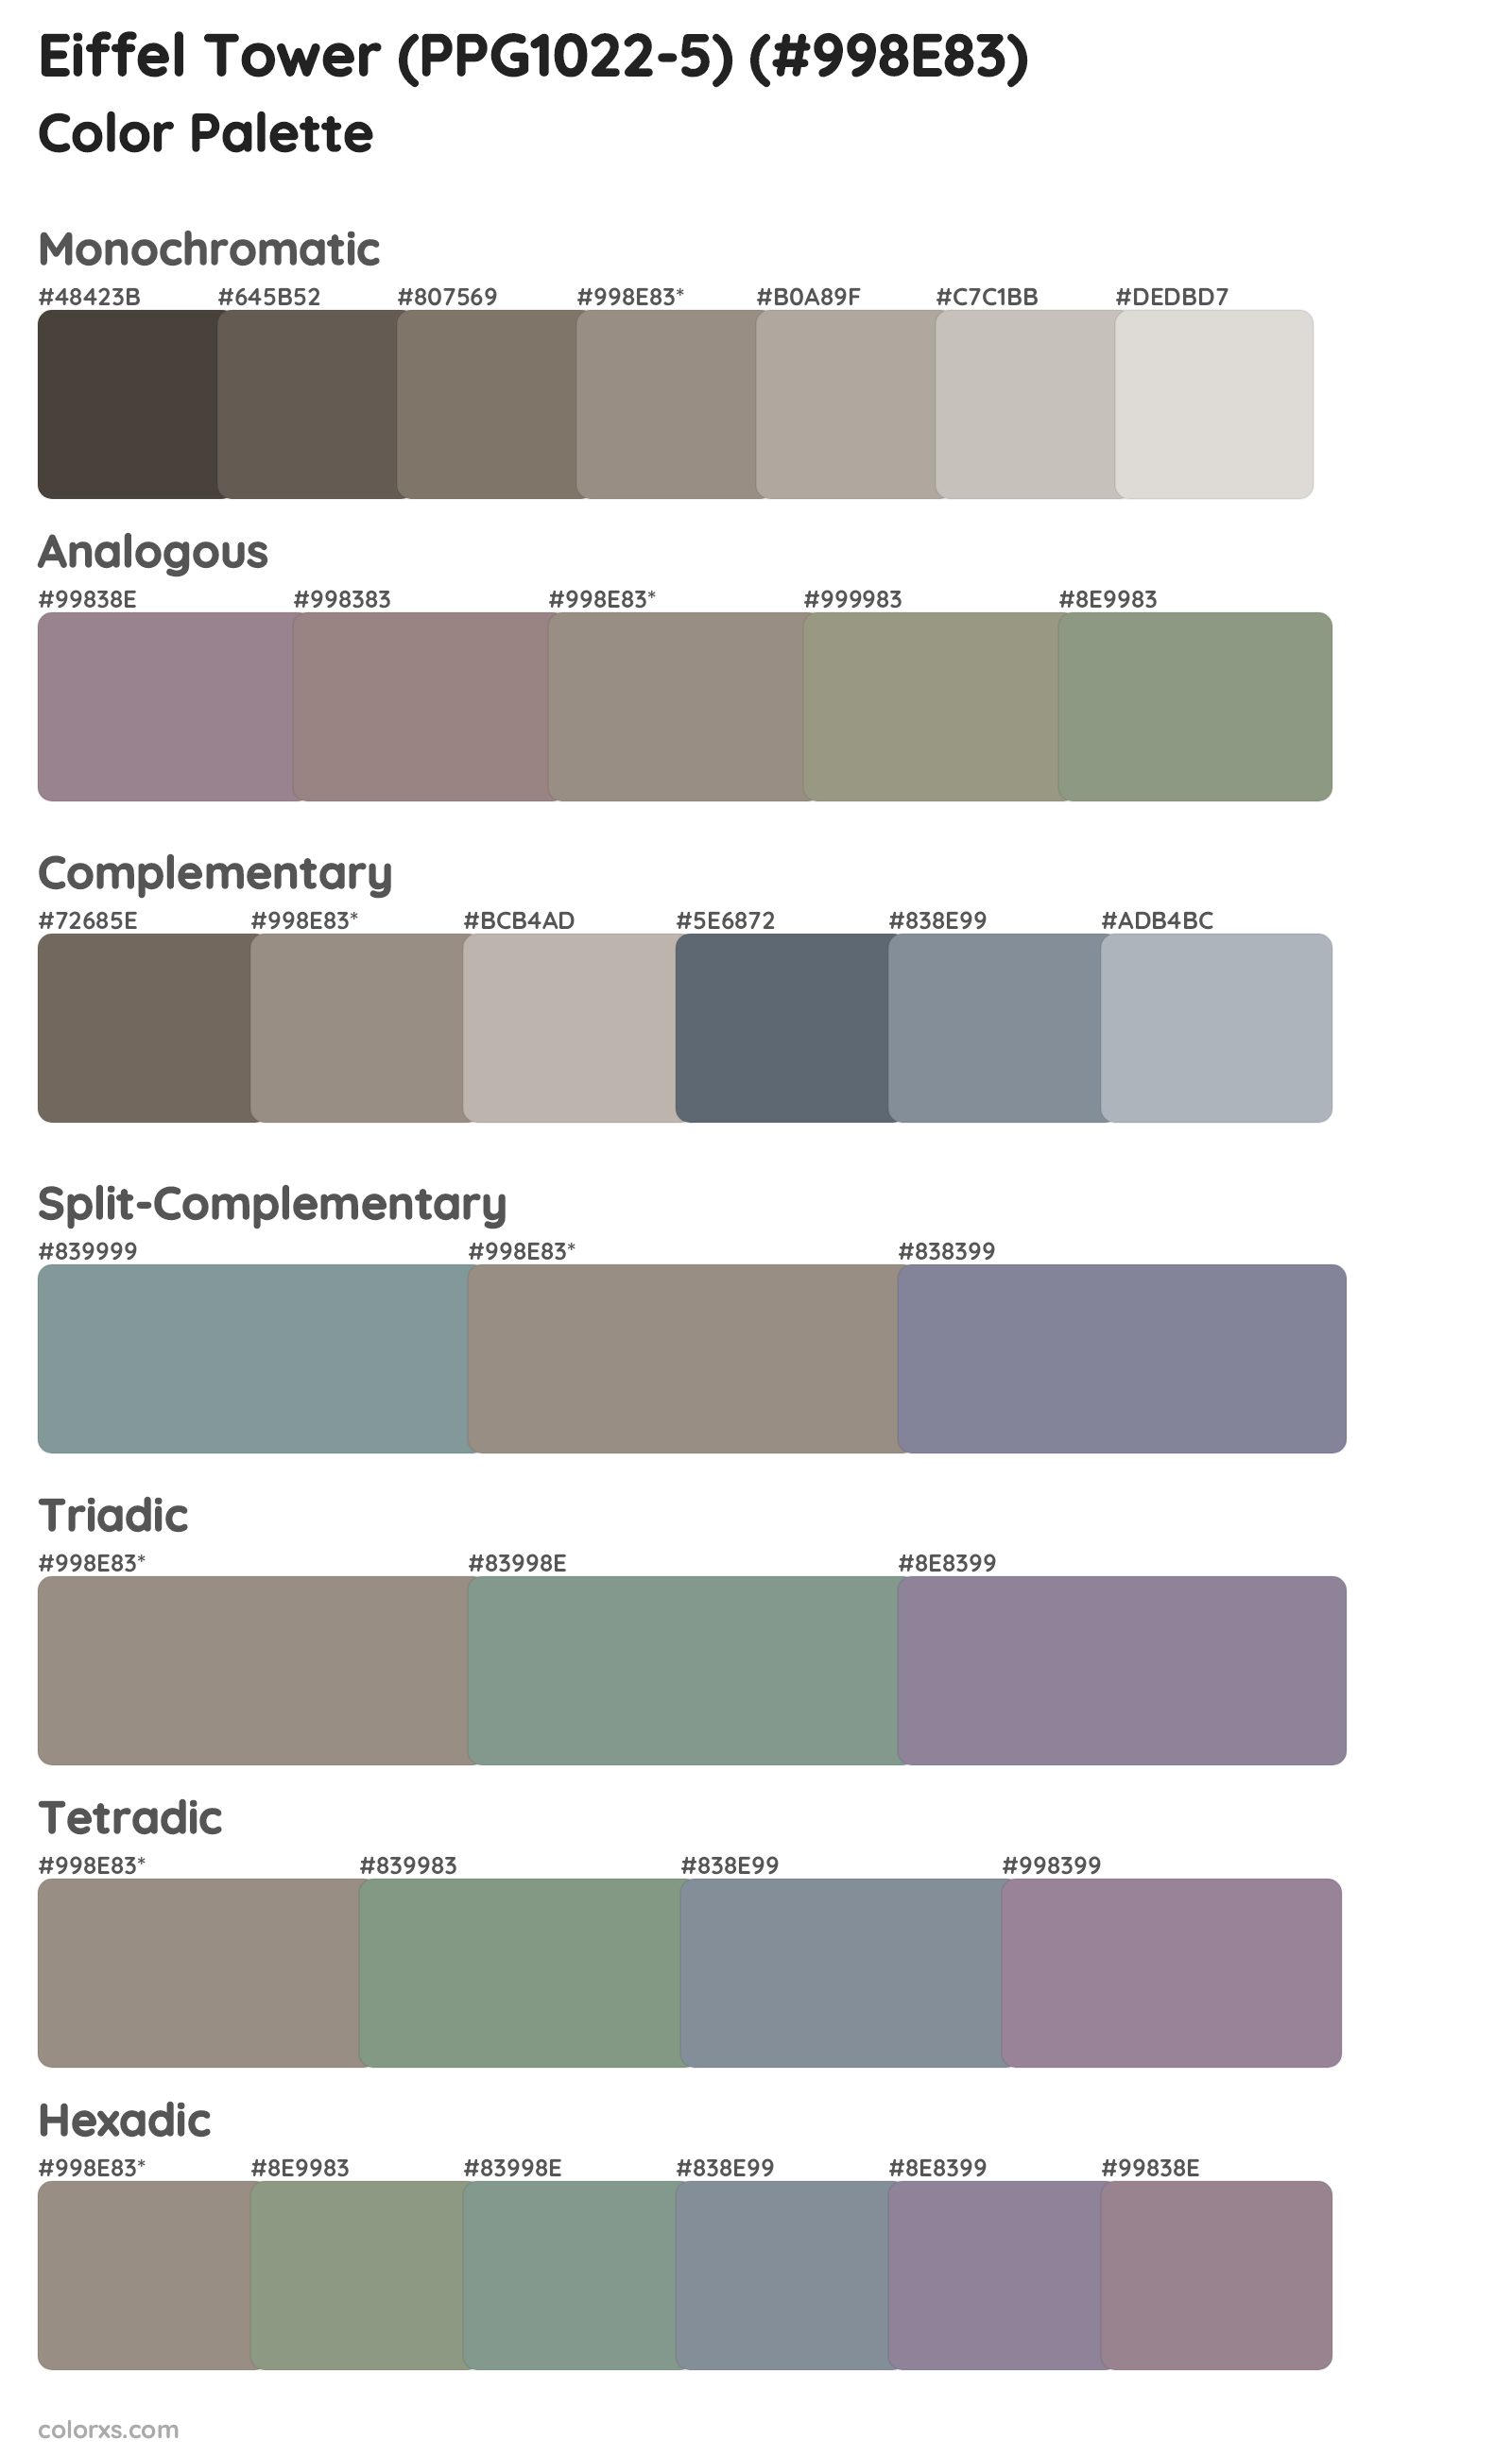 Eiffel Tower (PPG1022-5) Color Scheme Palettes